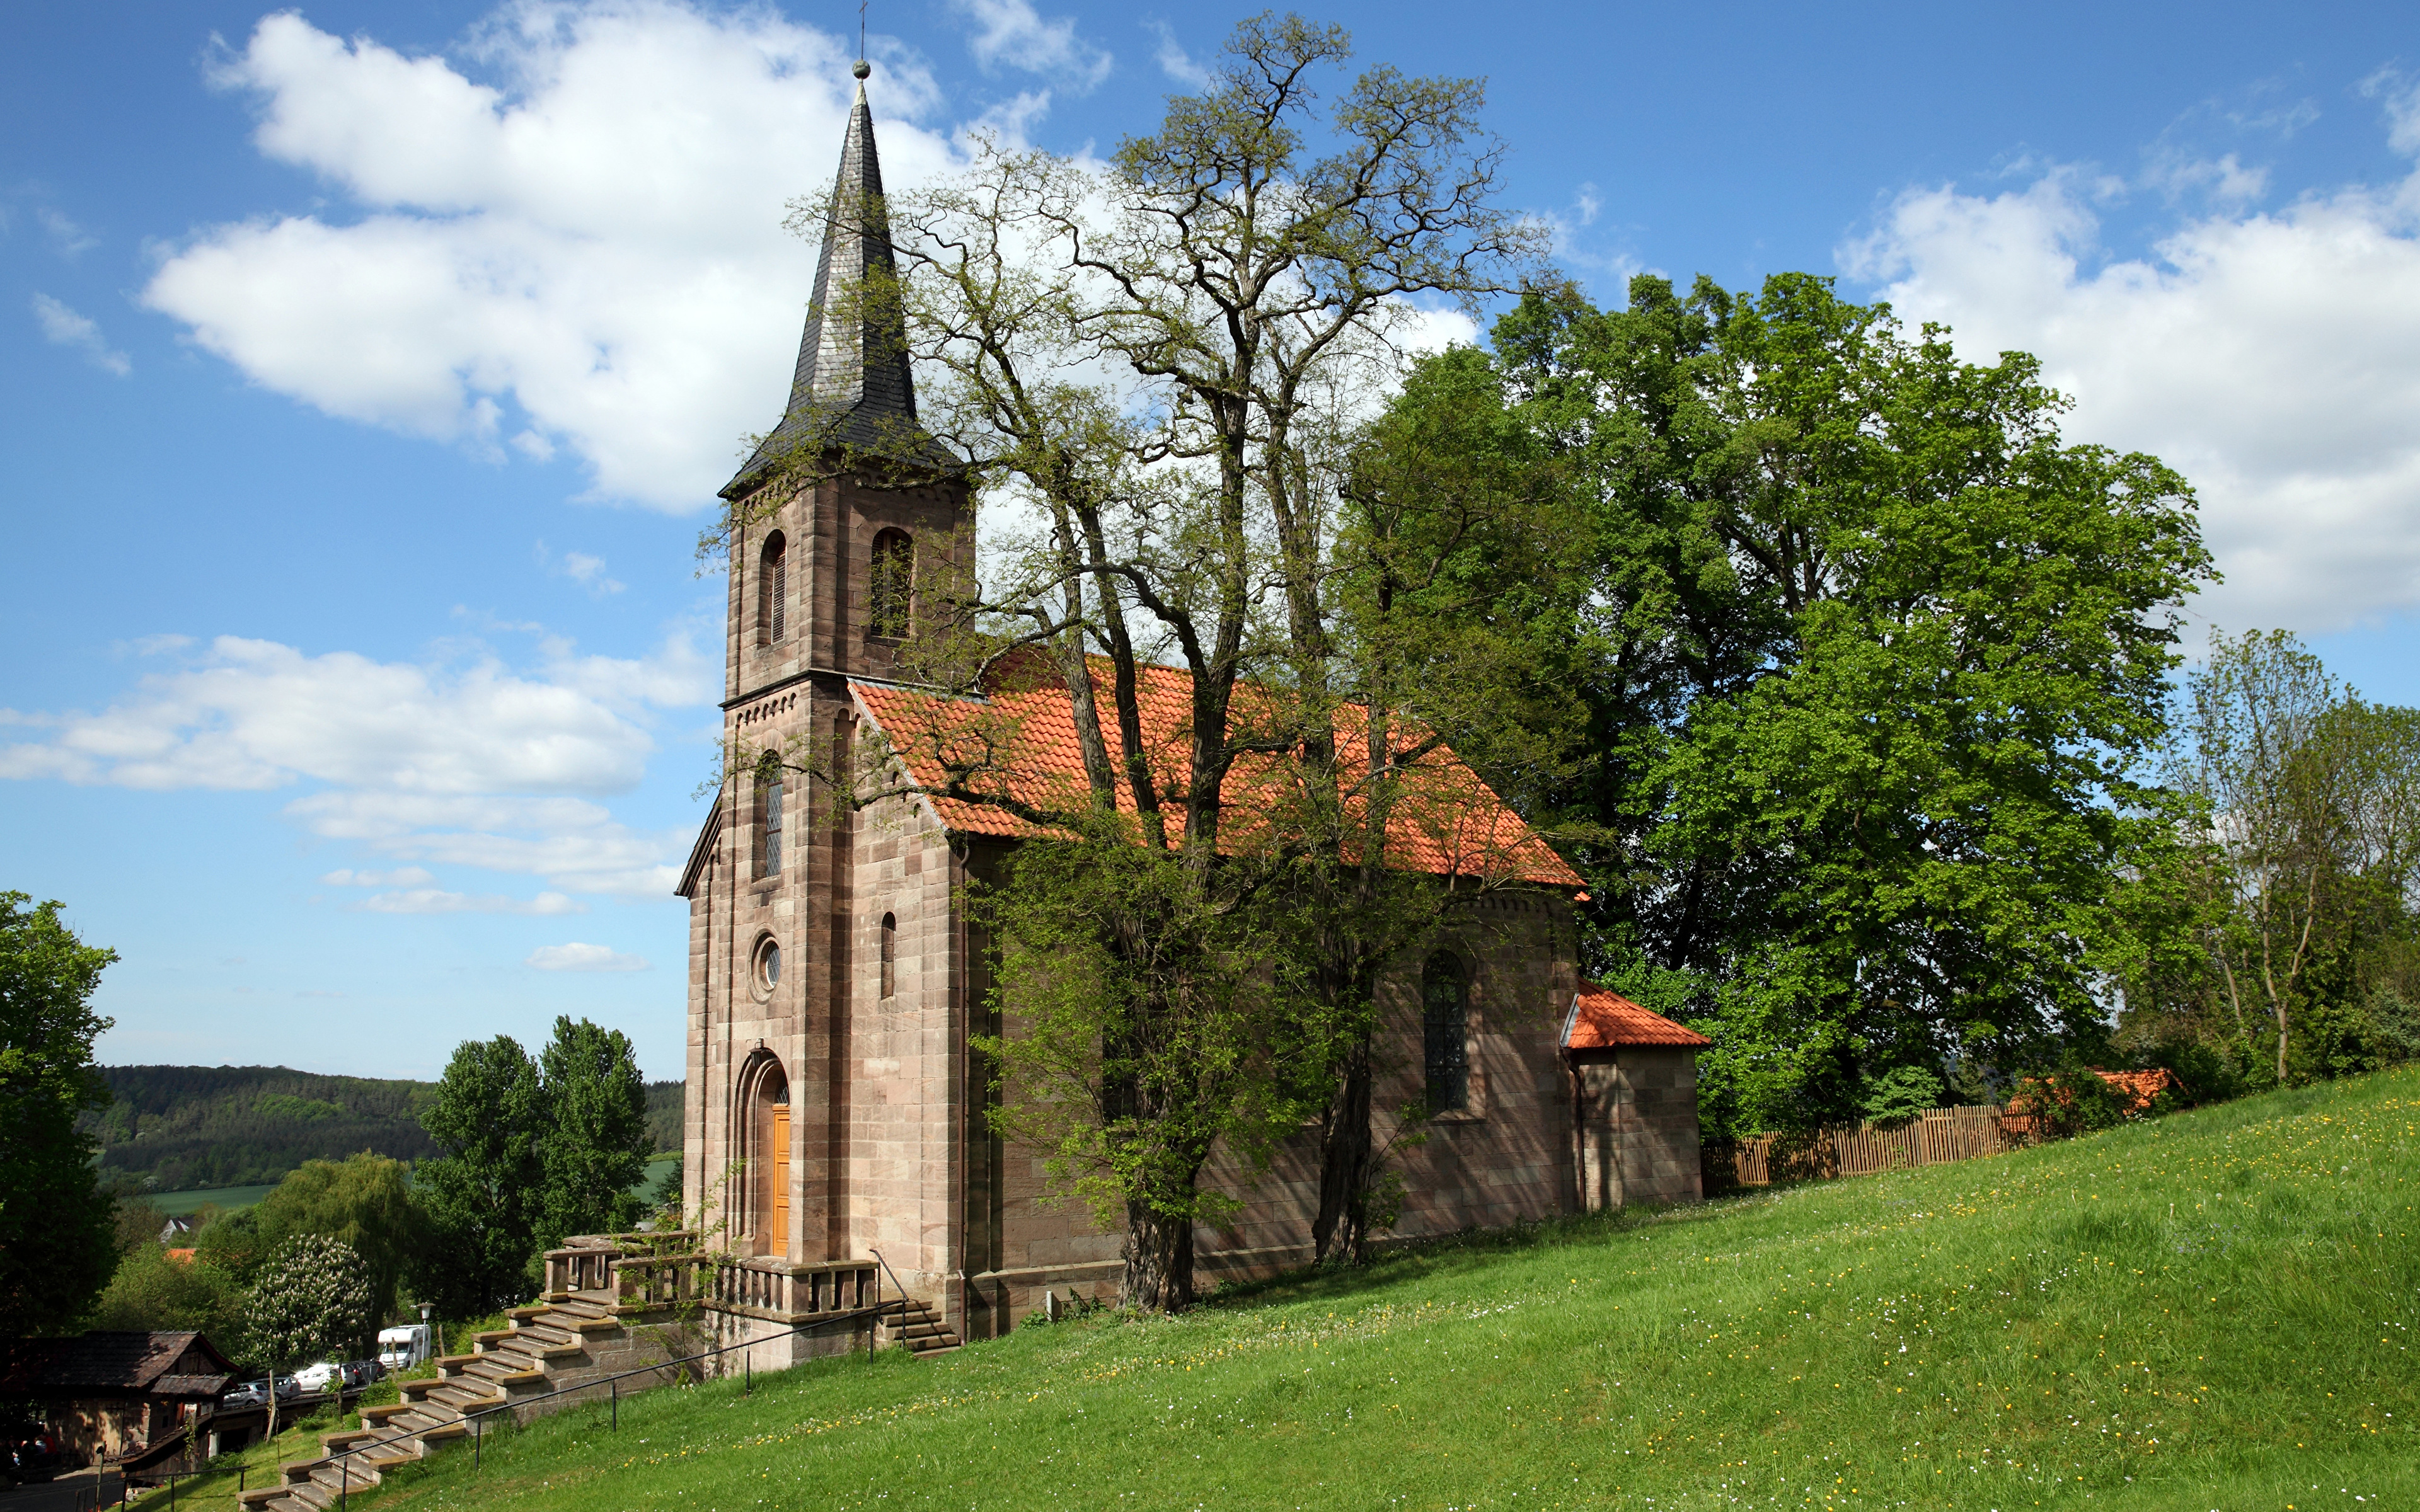 Фотография Церковь Германия Башня Bornhagen, Ev. Kirche город дерево 3840x2400 башни дерева Города Деревья деревьев